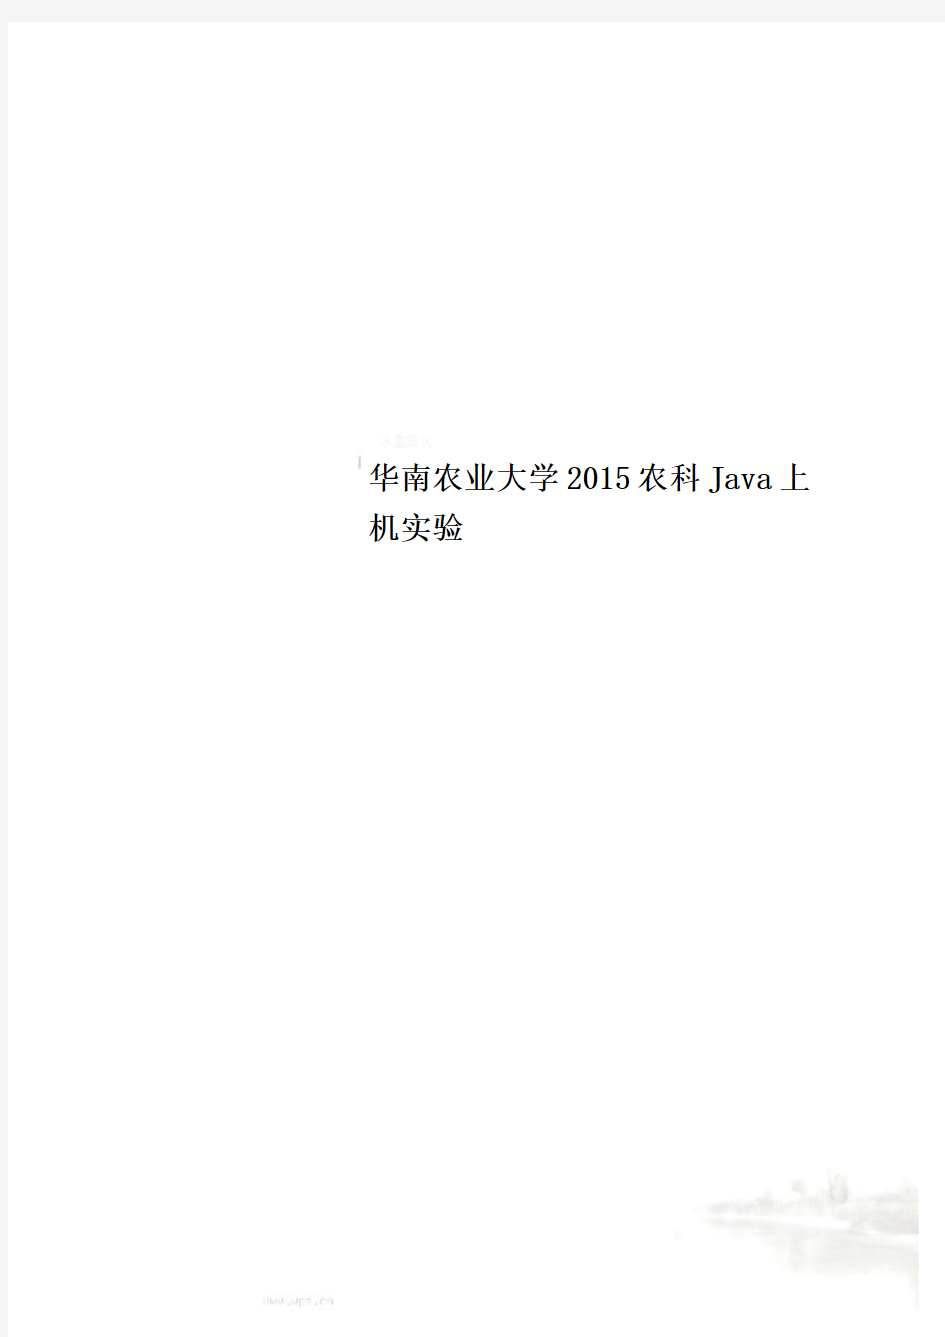 华南农业大学2015农科Java上机实验